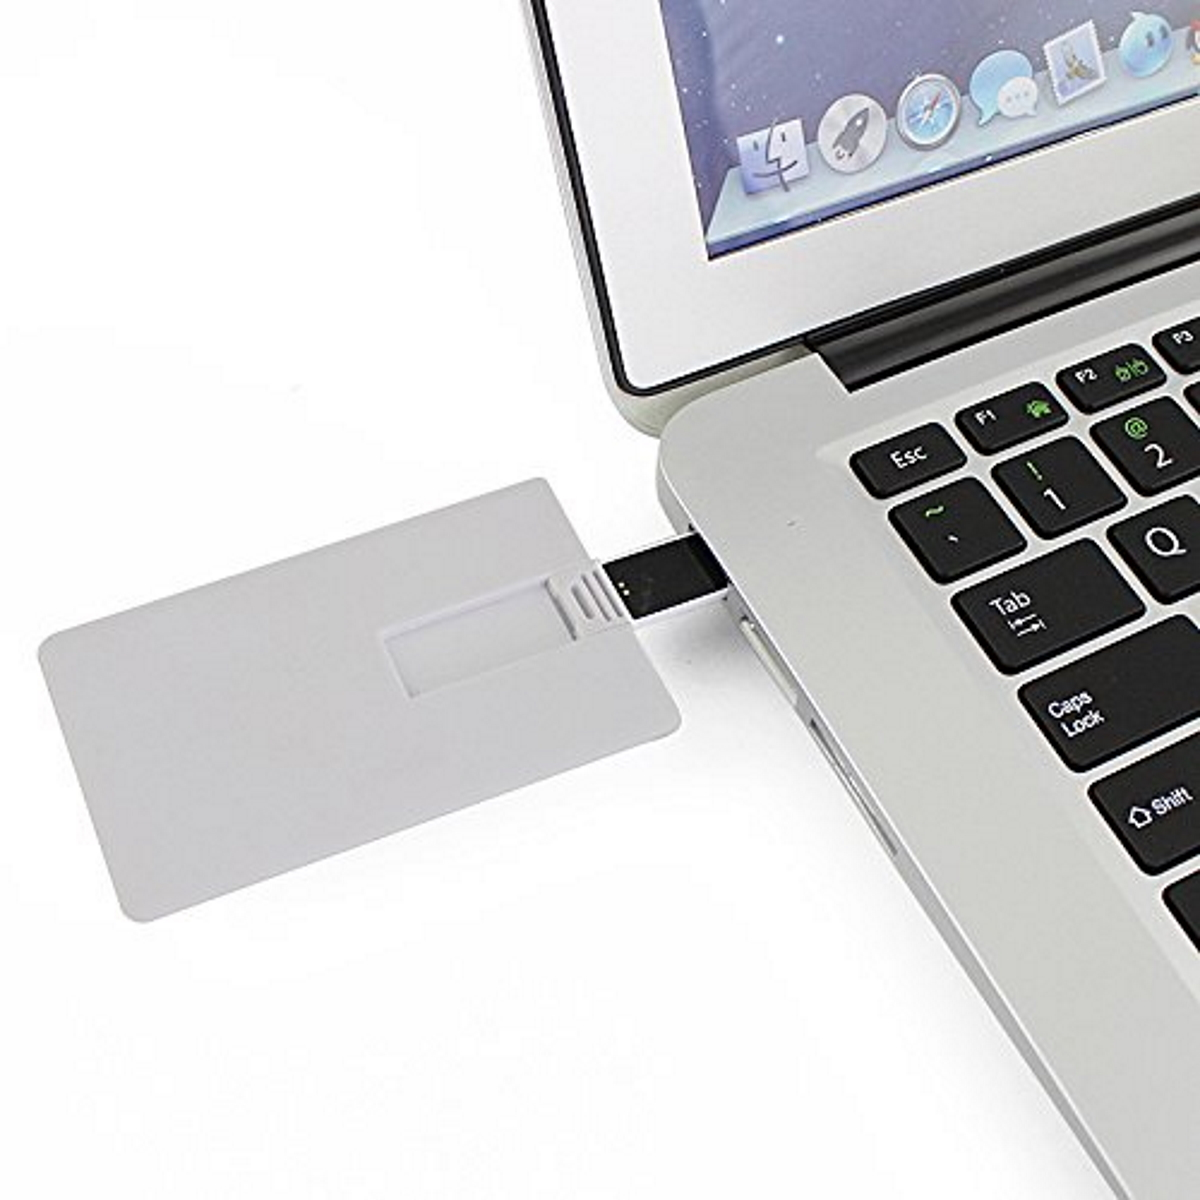 USB GERMANY ® Kreditkarte GB) (Weiss, 8 USB-Stick